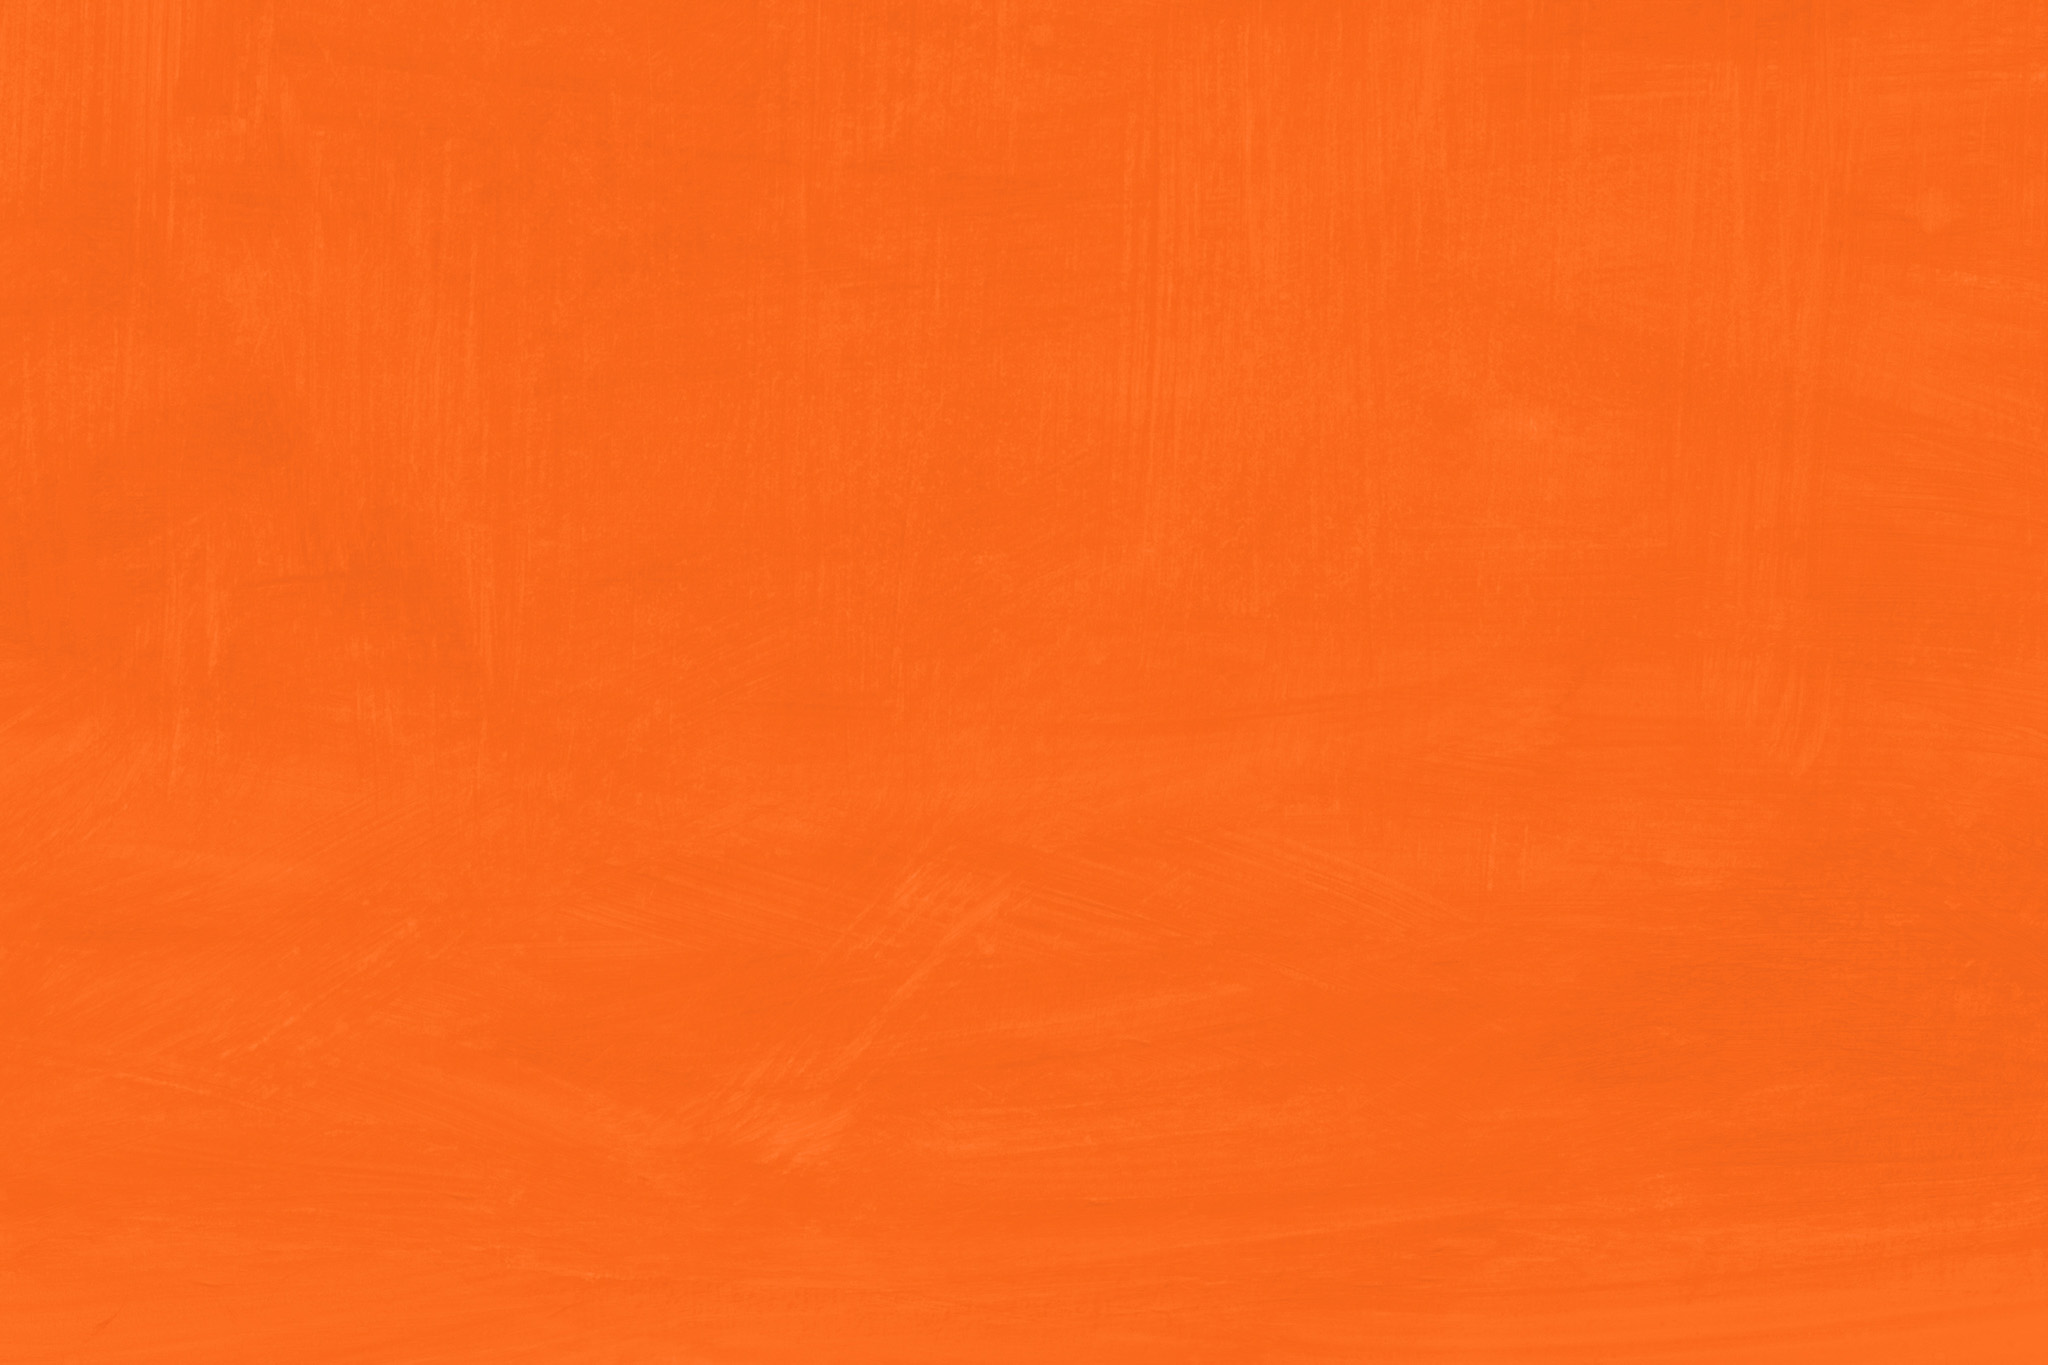 テクスチャ オレンジ色の無地の素材 の画像素材を無料ダウンロード 1 フリー素材 Beiz Images